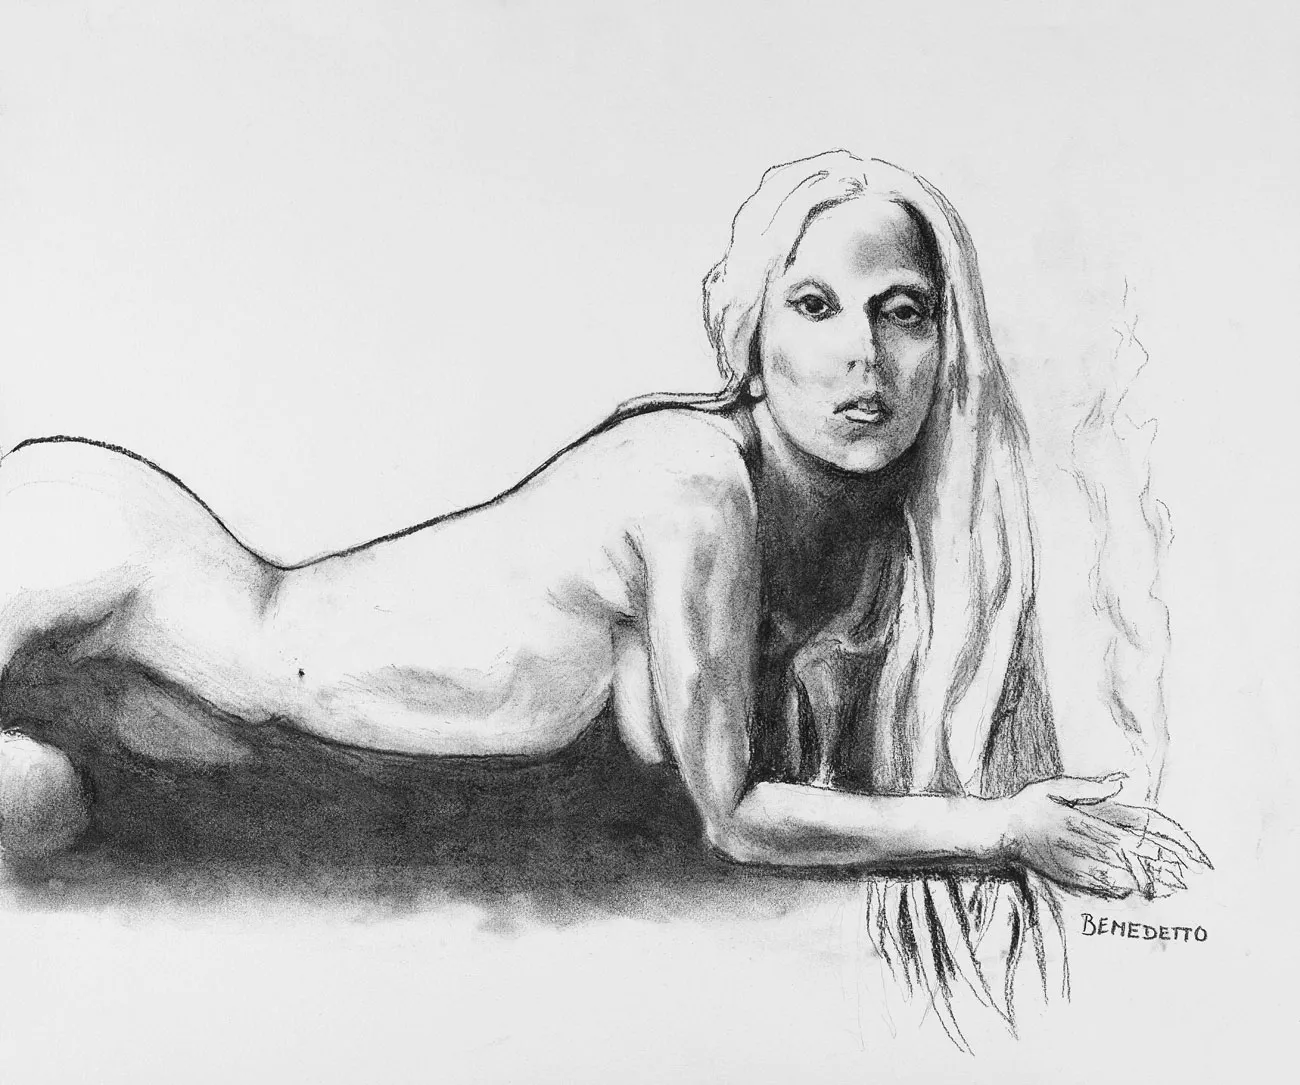 Desenho de Lady Gaga nua feito por Tony Bennett